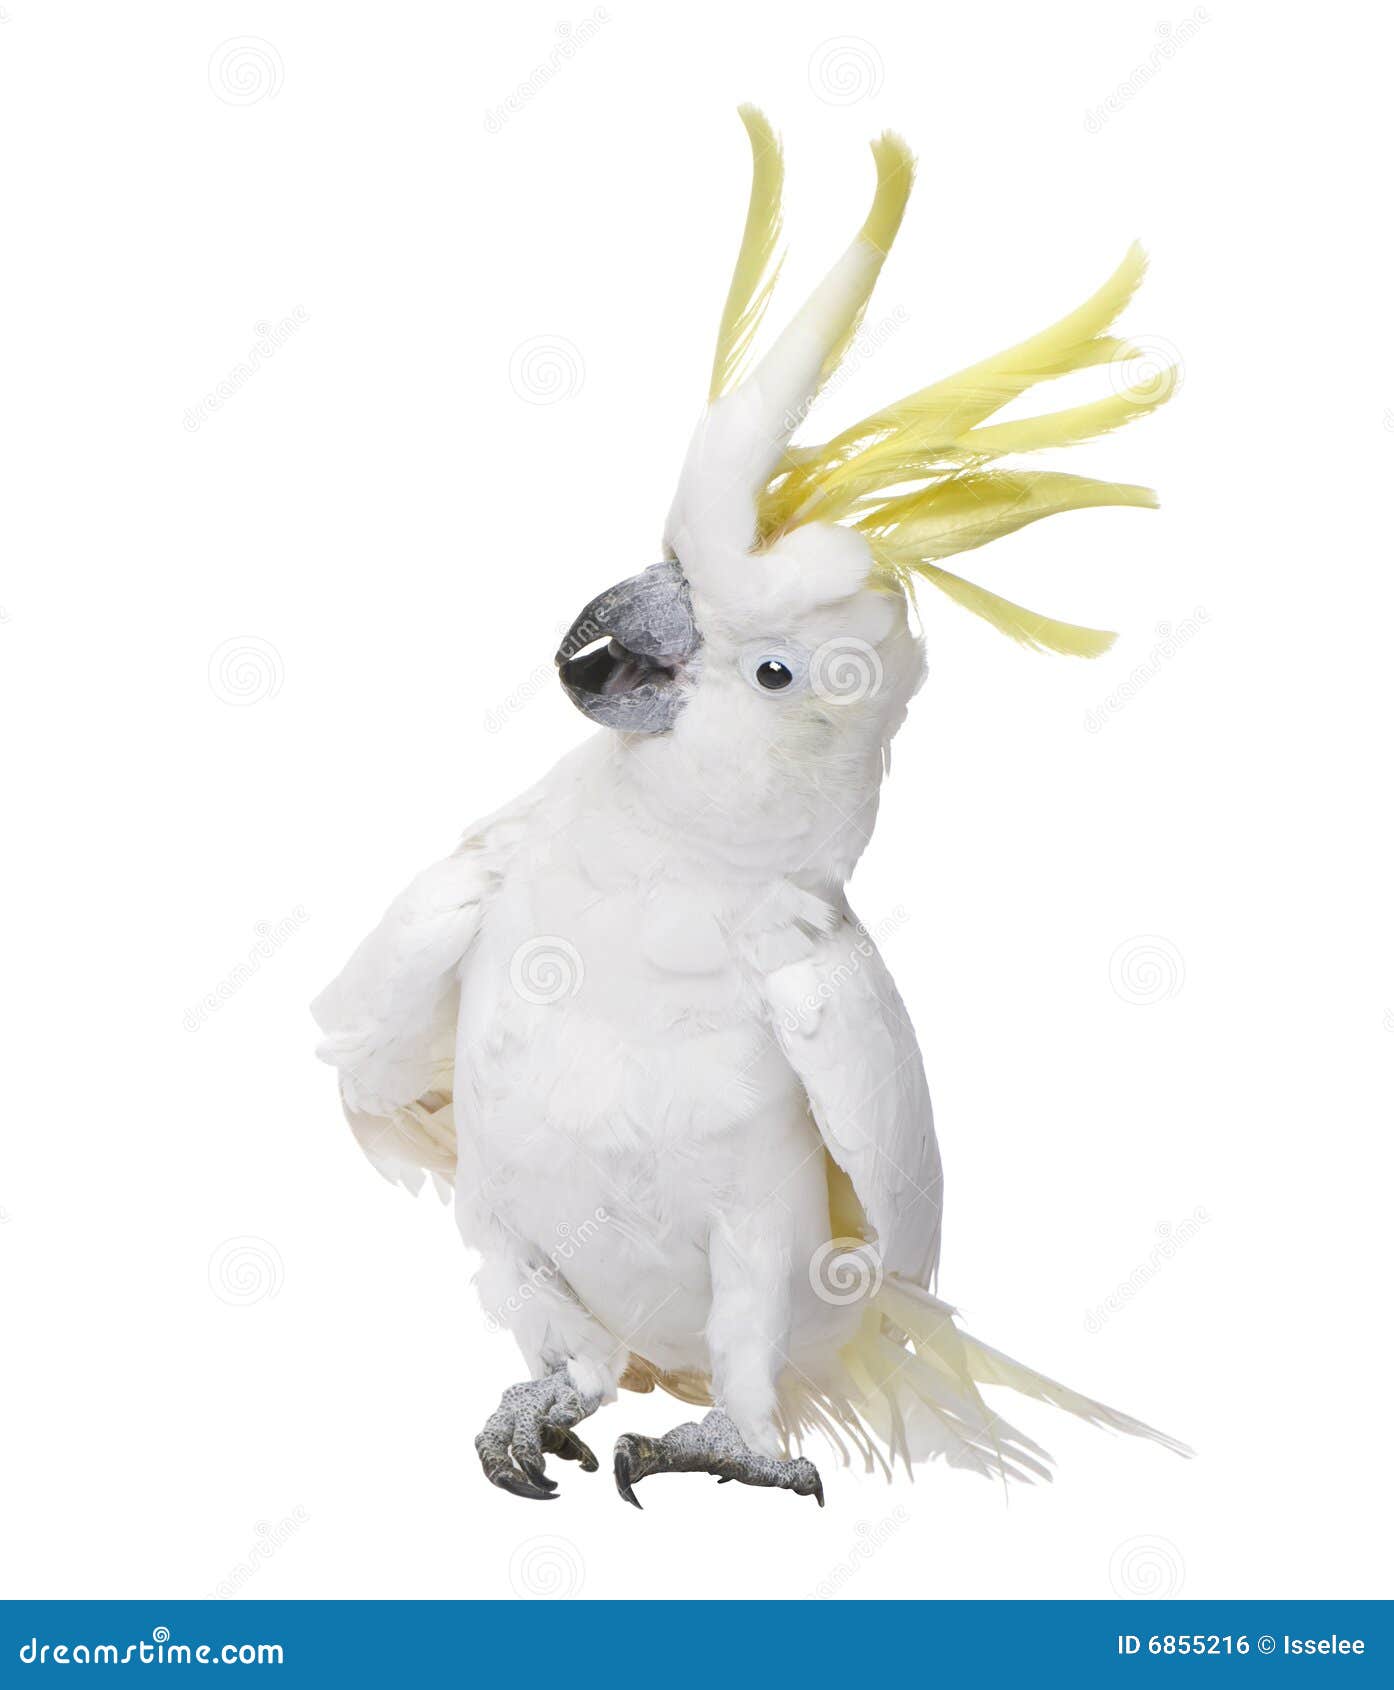 sulphur-crested cockatoo - cacatua galerita